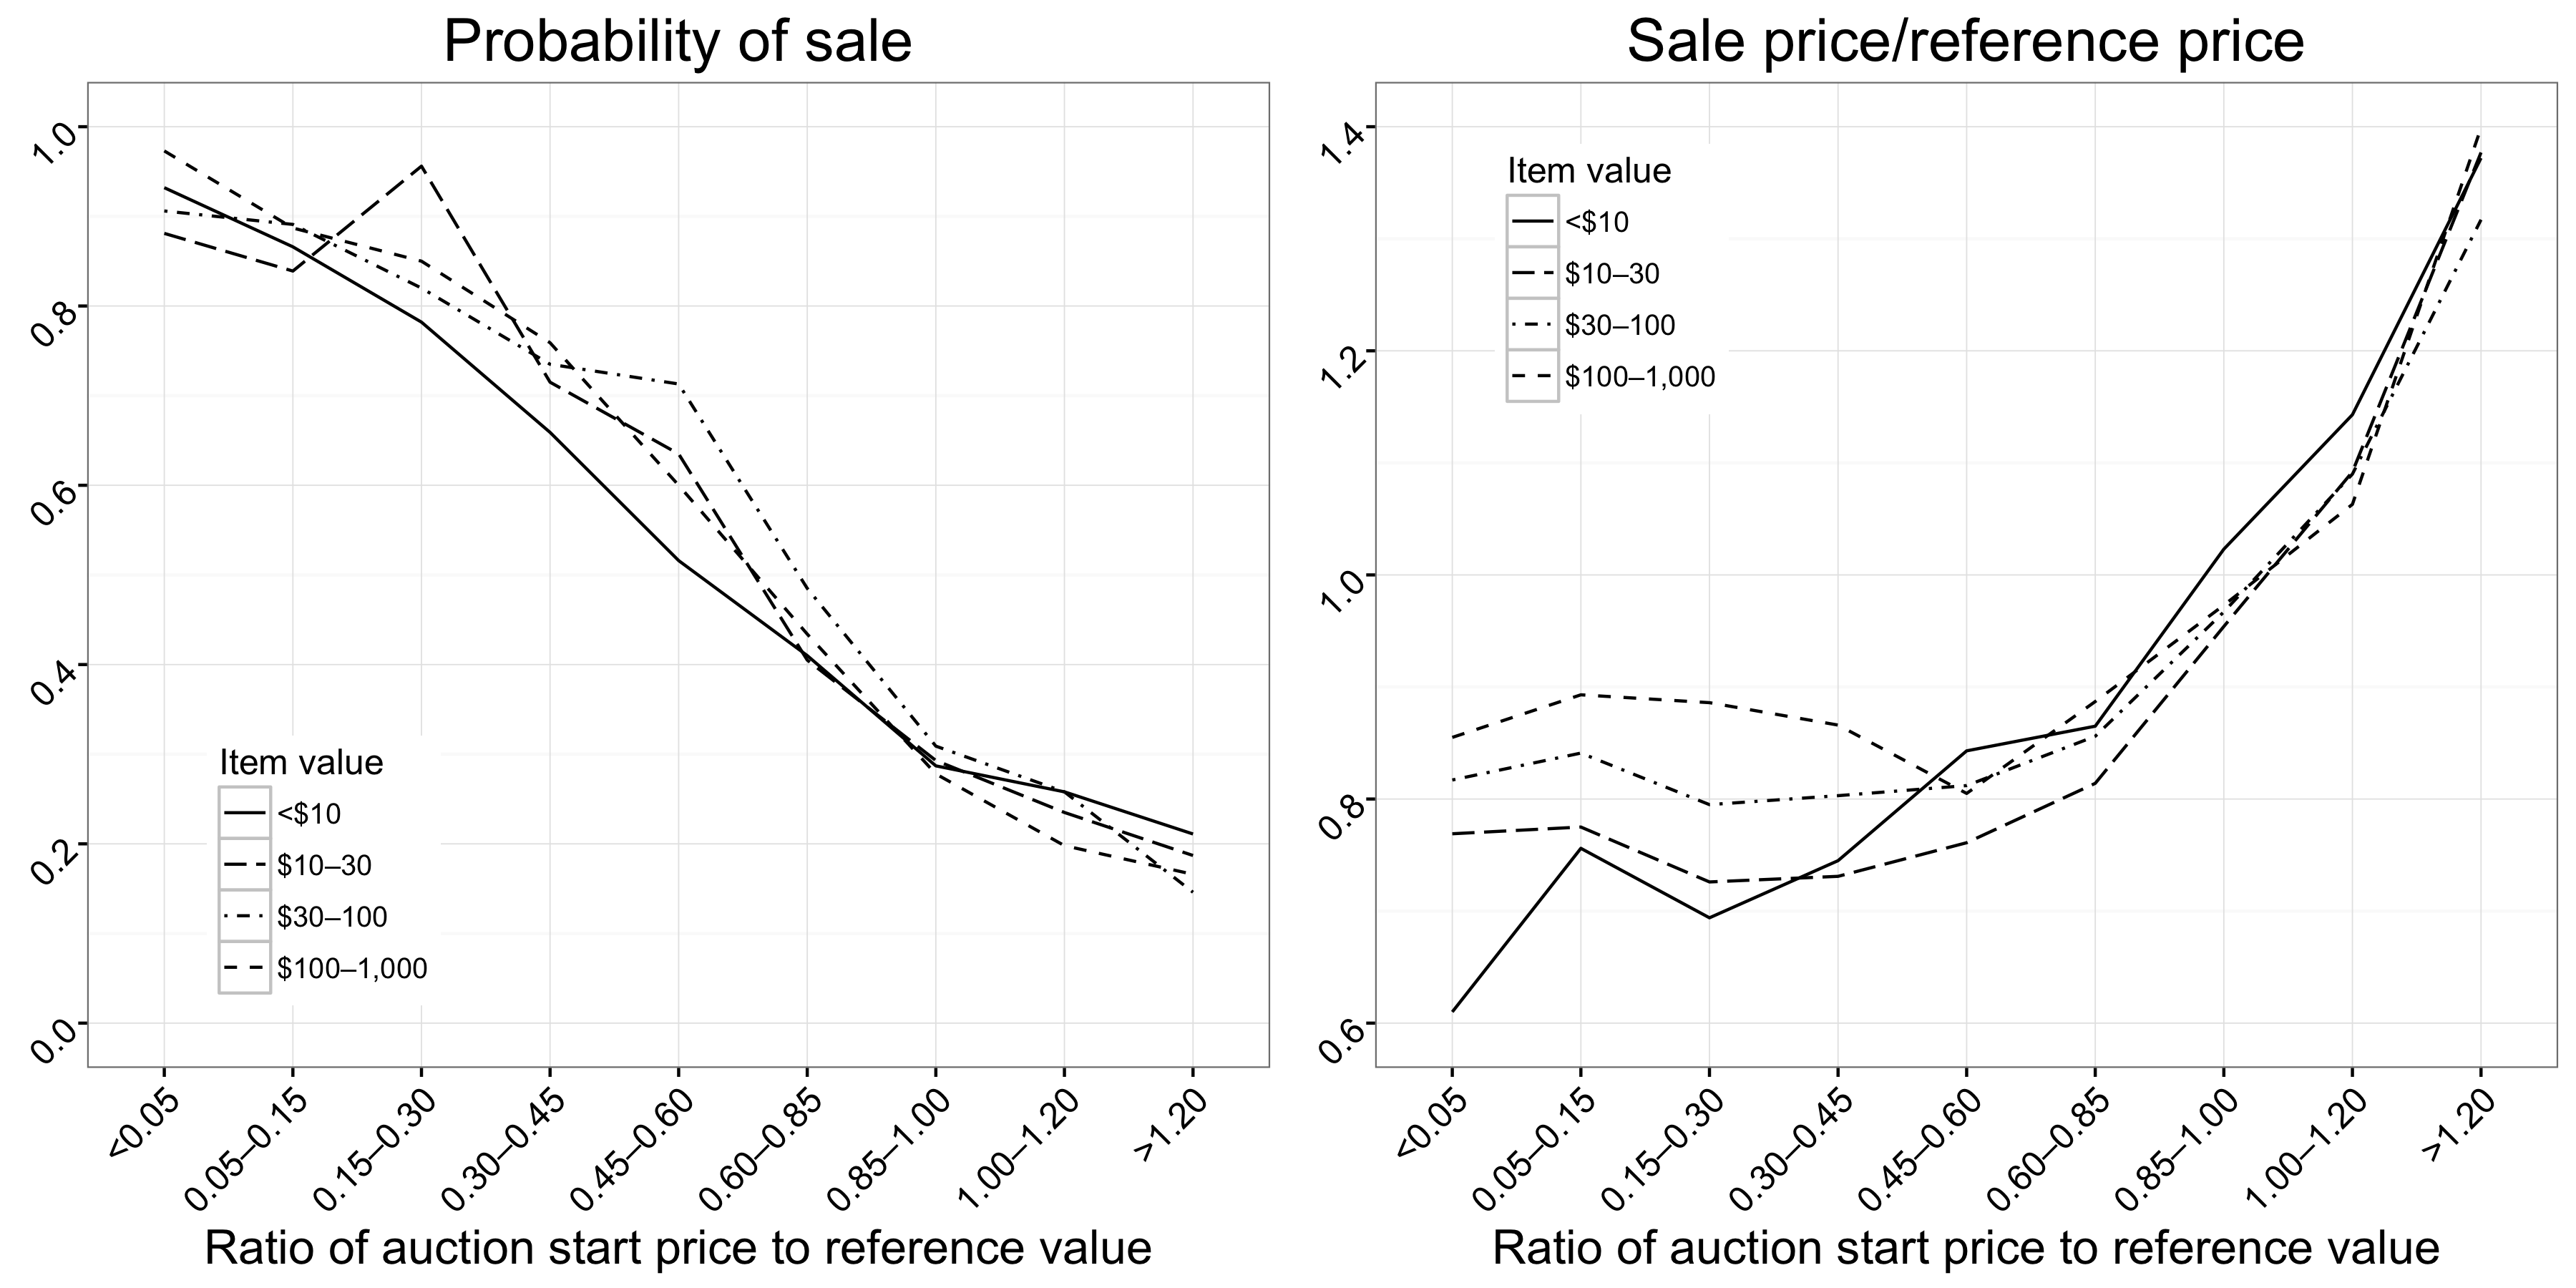 Рисунок 2.7: Связь между аукциона стартовая цена и вероятность продажи (левая панель) и ценой продажи (правая панель). Существует примерно линейная зависимость между ценой начала и вероятность продажи, но есть нелинейное соотношение между ценой и начальной ценой продажи; для начала цены в диапазоне от 0,05 до 0,85, стартовая цена имеет очень незначительное влияние на цену продажи. В обоих случаях отношения в основном зависит от стоимости товара. Эти графики воспроизводят Фиг.4А и 4В Эйнав и соавт. (2015).